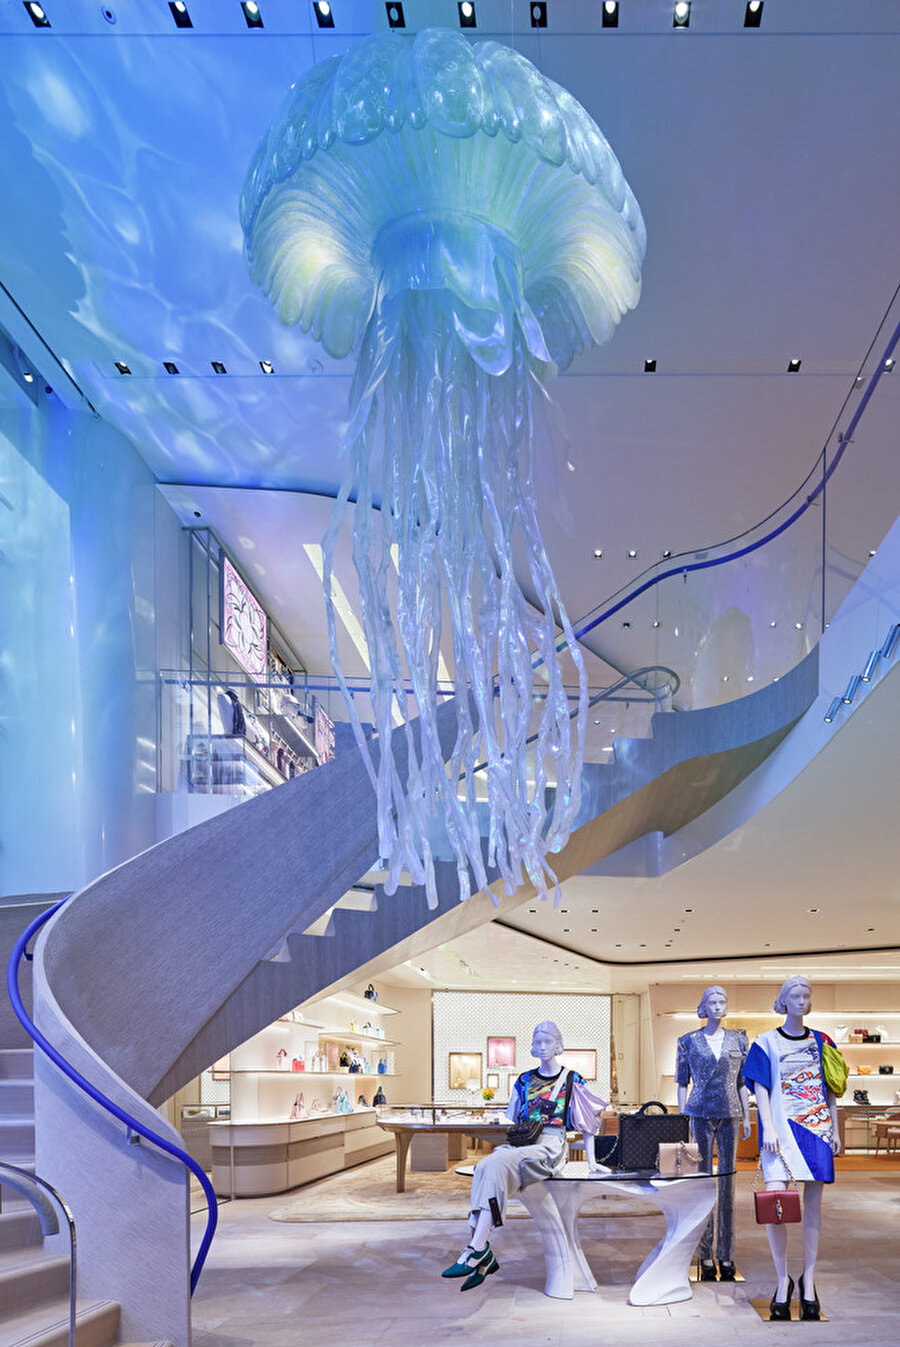 Mağazanın girişinde; ahşap ve cam malzeme paletinden ve kavisli yüzeylerden oluşan merdivene monogram detaylı devasa denizanaları eşlik ediyor.